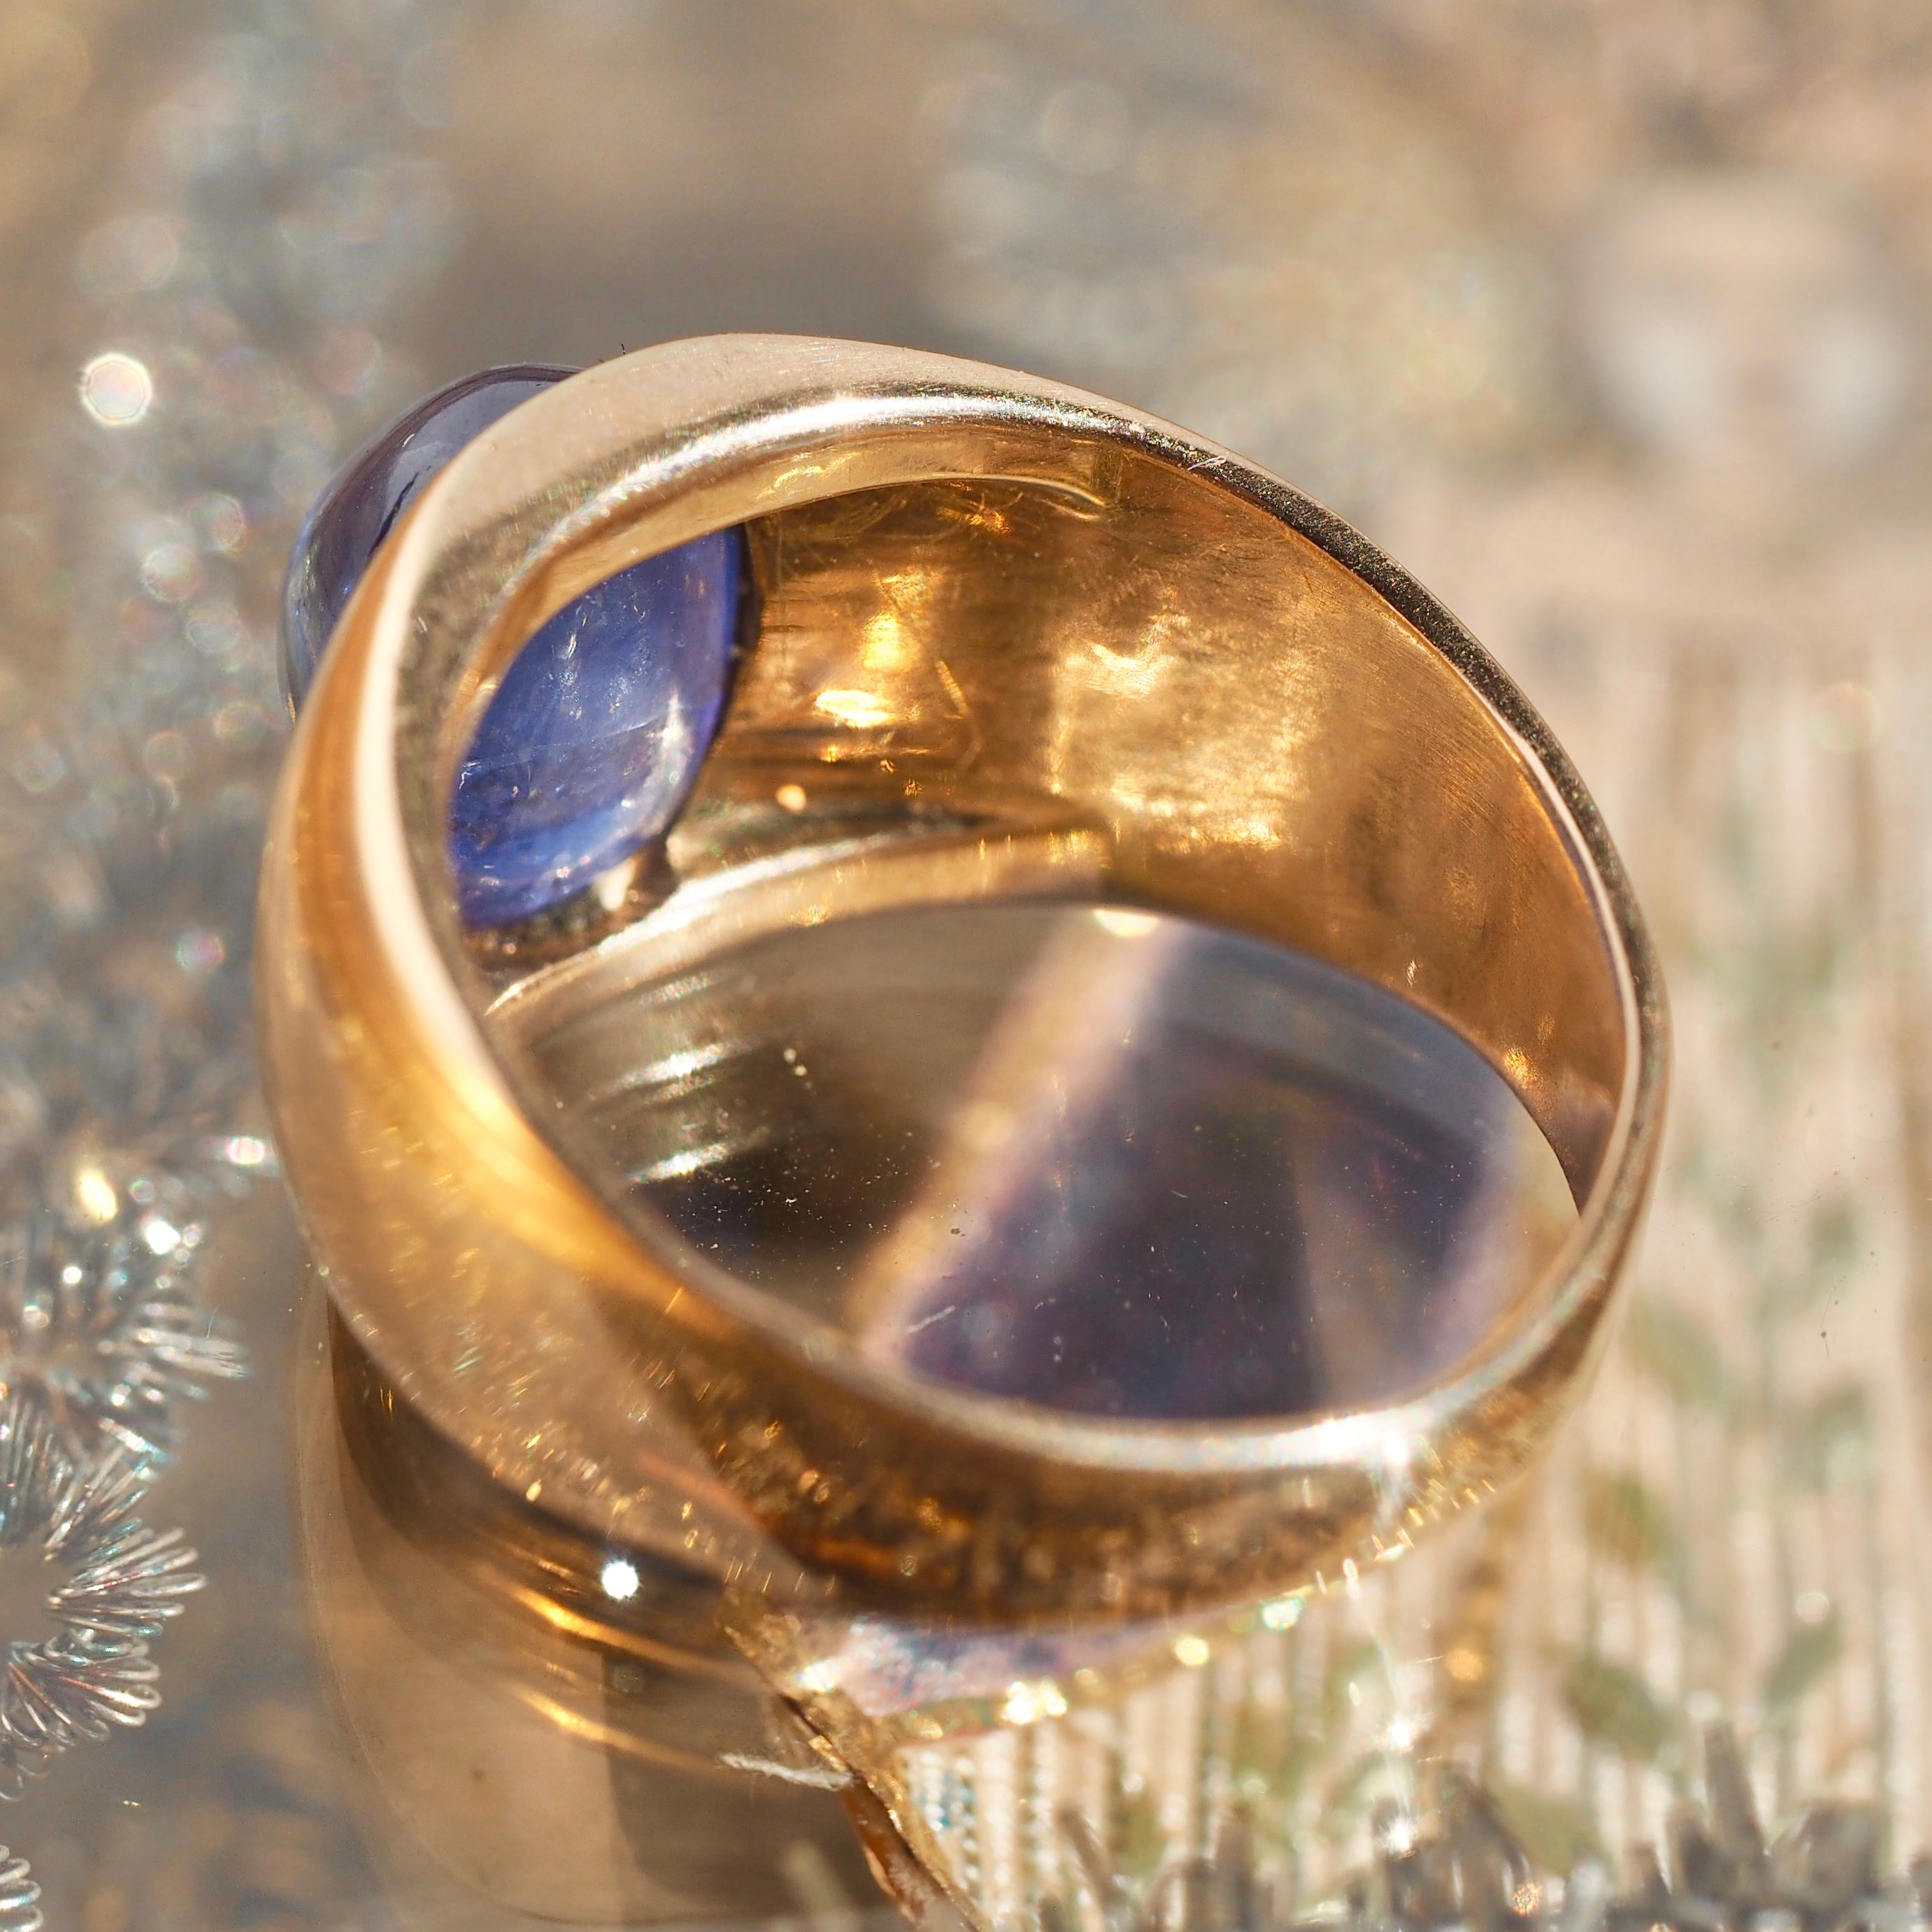 Vintage 14k Gold Natural Sapphire Sugarloaf Cabochon Ring